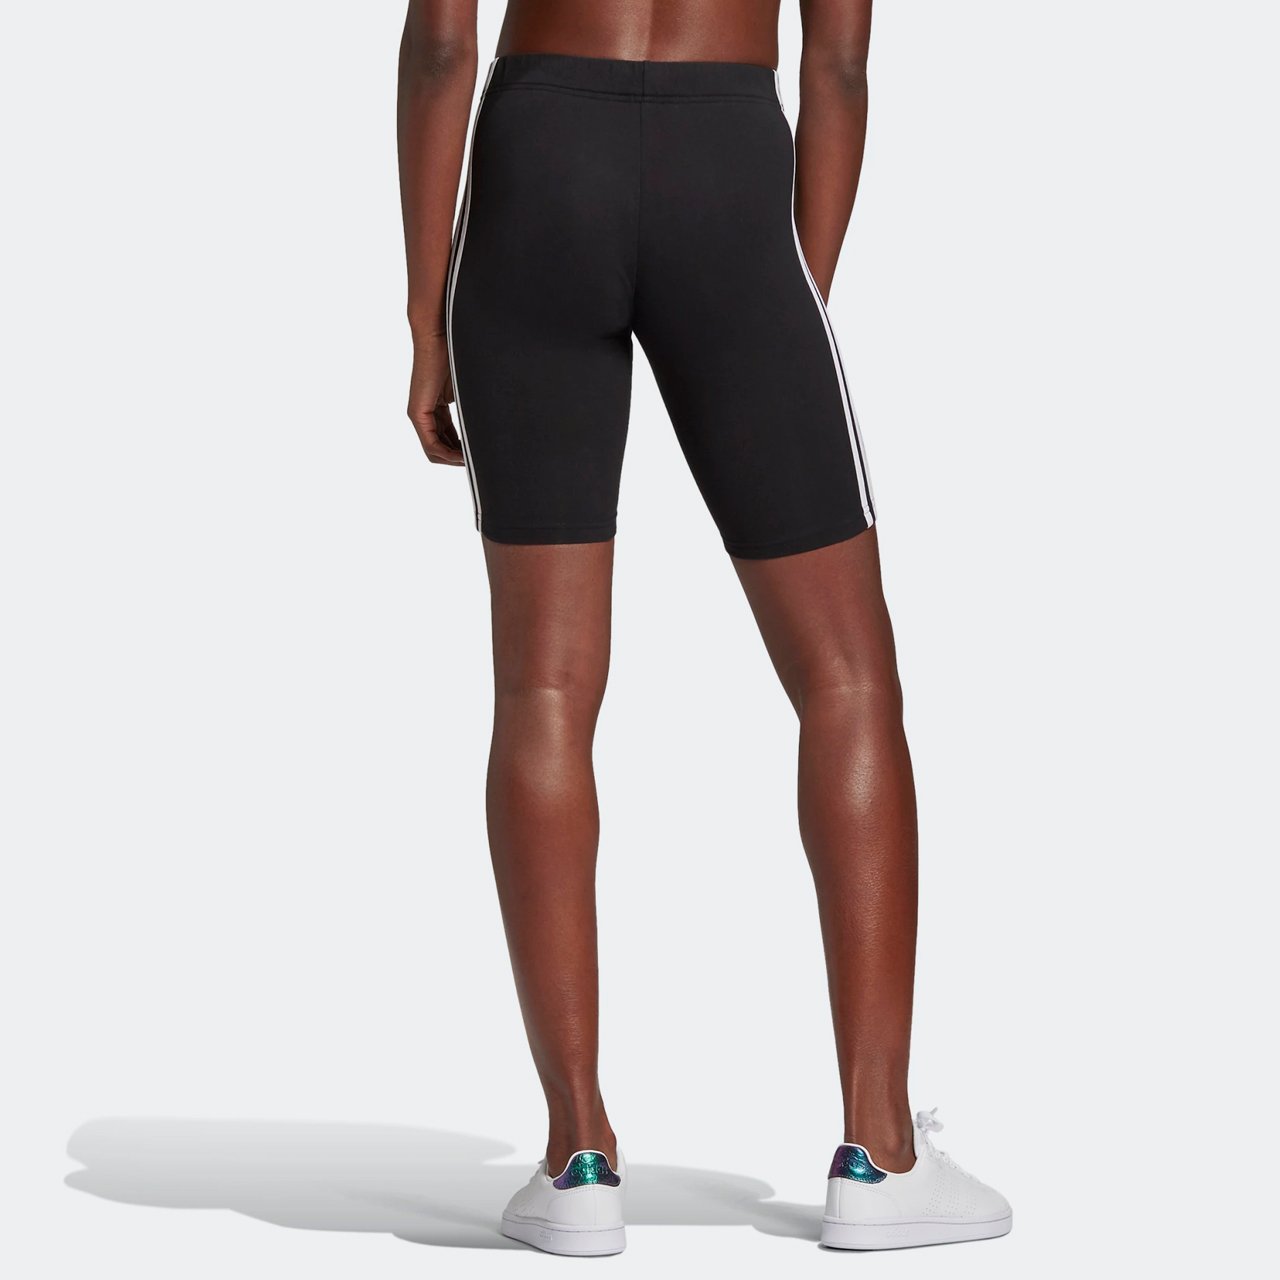 short-adidas-ciclista-3-listras-preto-feminina-gr3866-bjpg